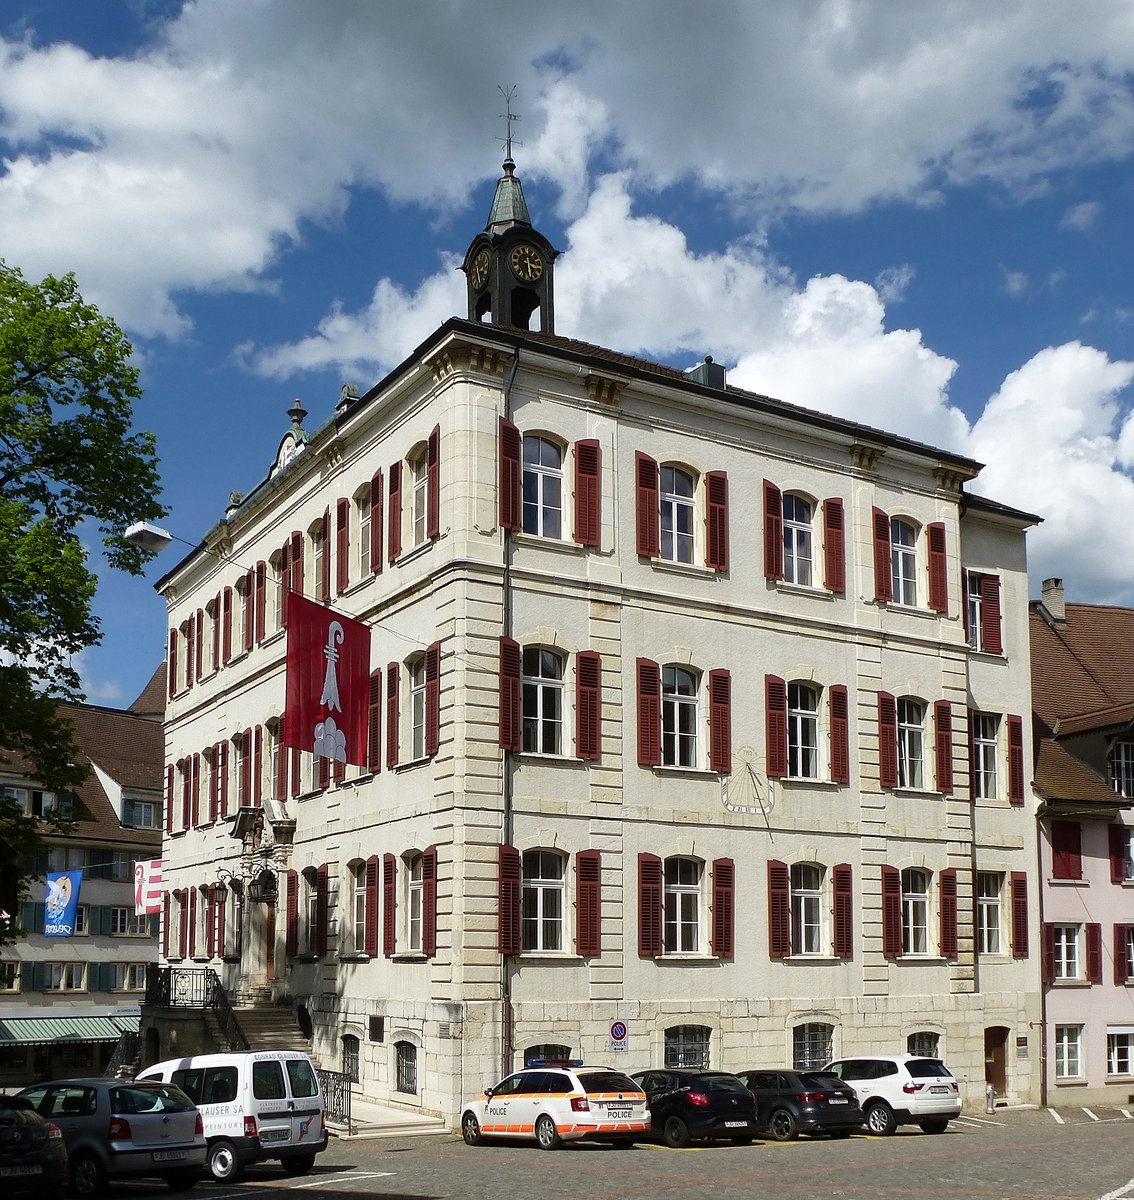 Delsberg (Delemont), das Rathaus der ca.13000 Einwöhner zählenden Hauptstadt des Kantons Jura, erbaut im barocken Stil 1742-45, Mai 2017